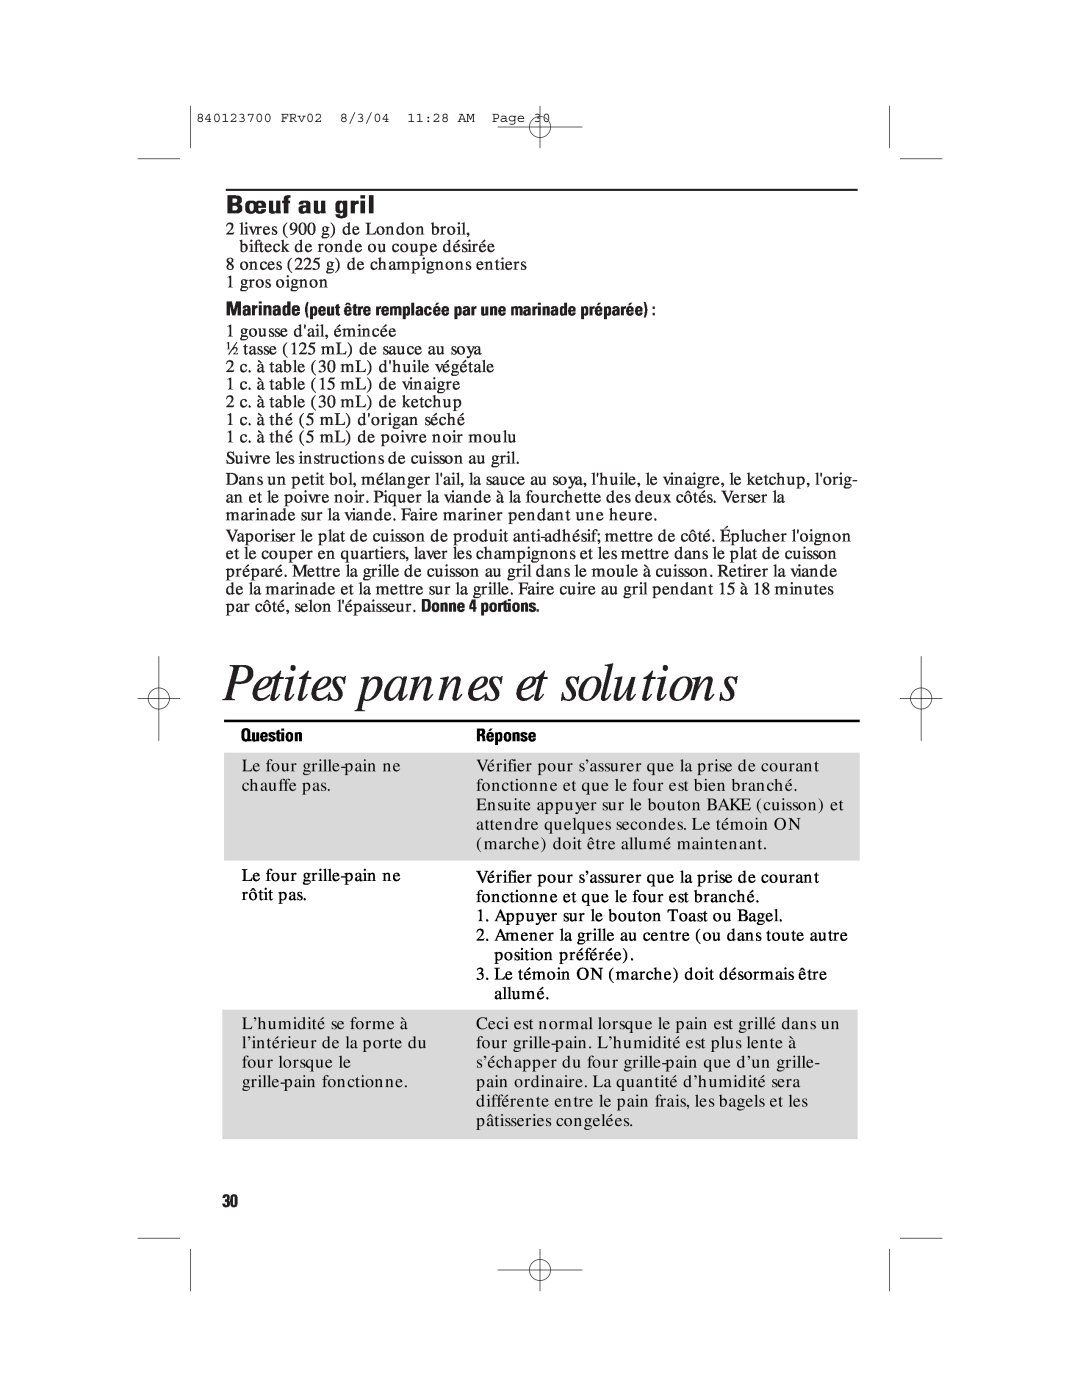 GE 840123700, 168989 manual Petites pannes et solutions, Bœuf au gril, Réponse, Question 